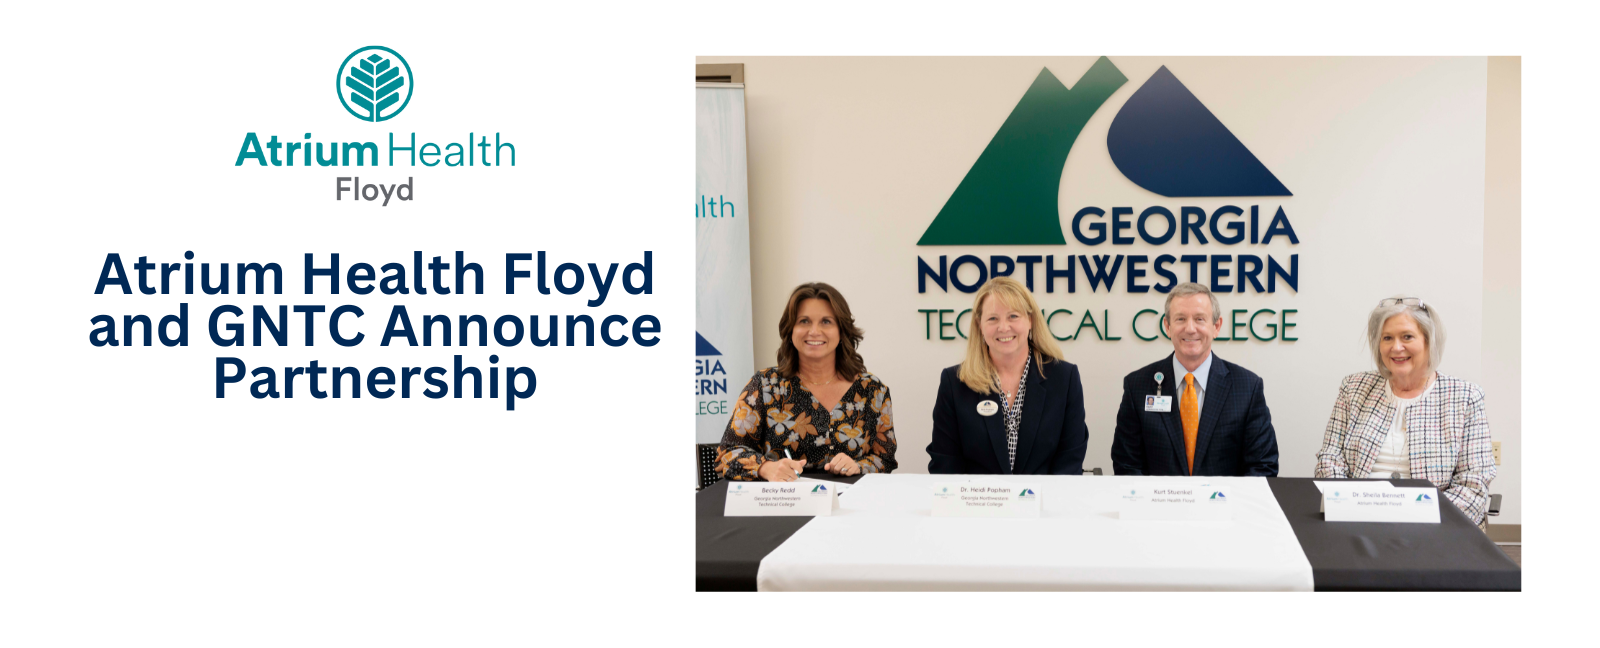 Atrium Health Floyd and GNTC announce partnership